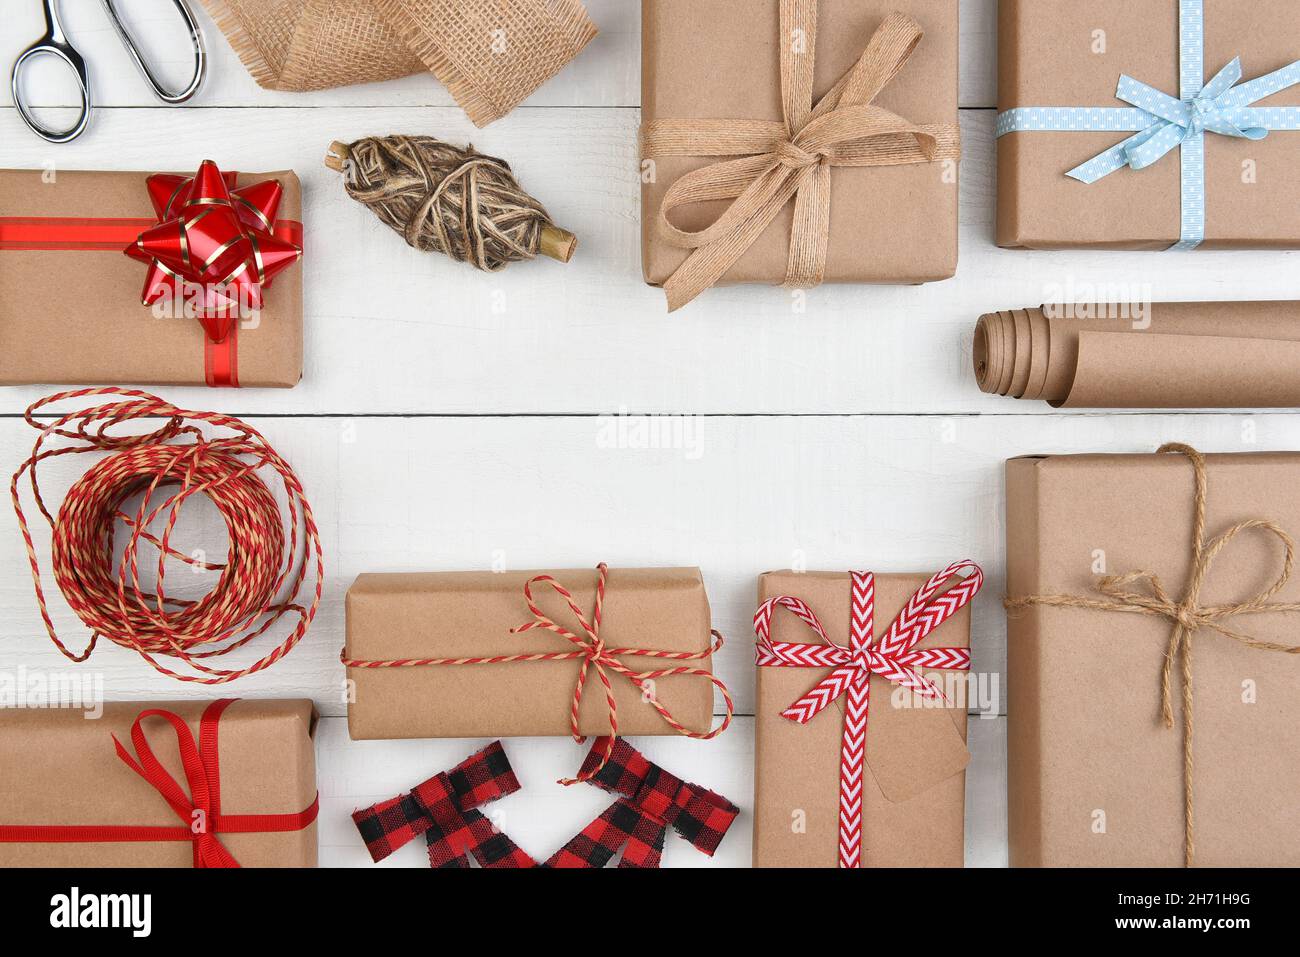 Plat de Noël - papier kraft brun ordinaire emballé cadeaux et accessoires avec espace de copie central. Banque D'Images